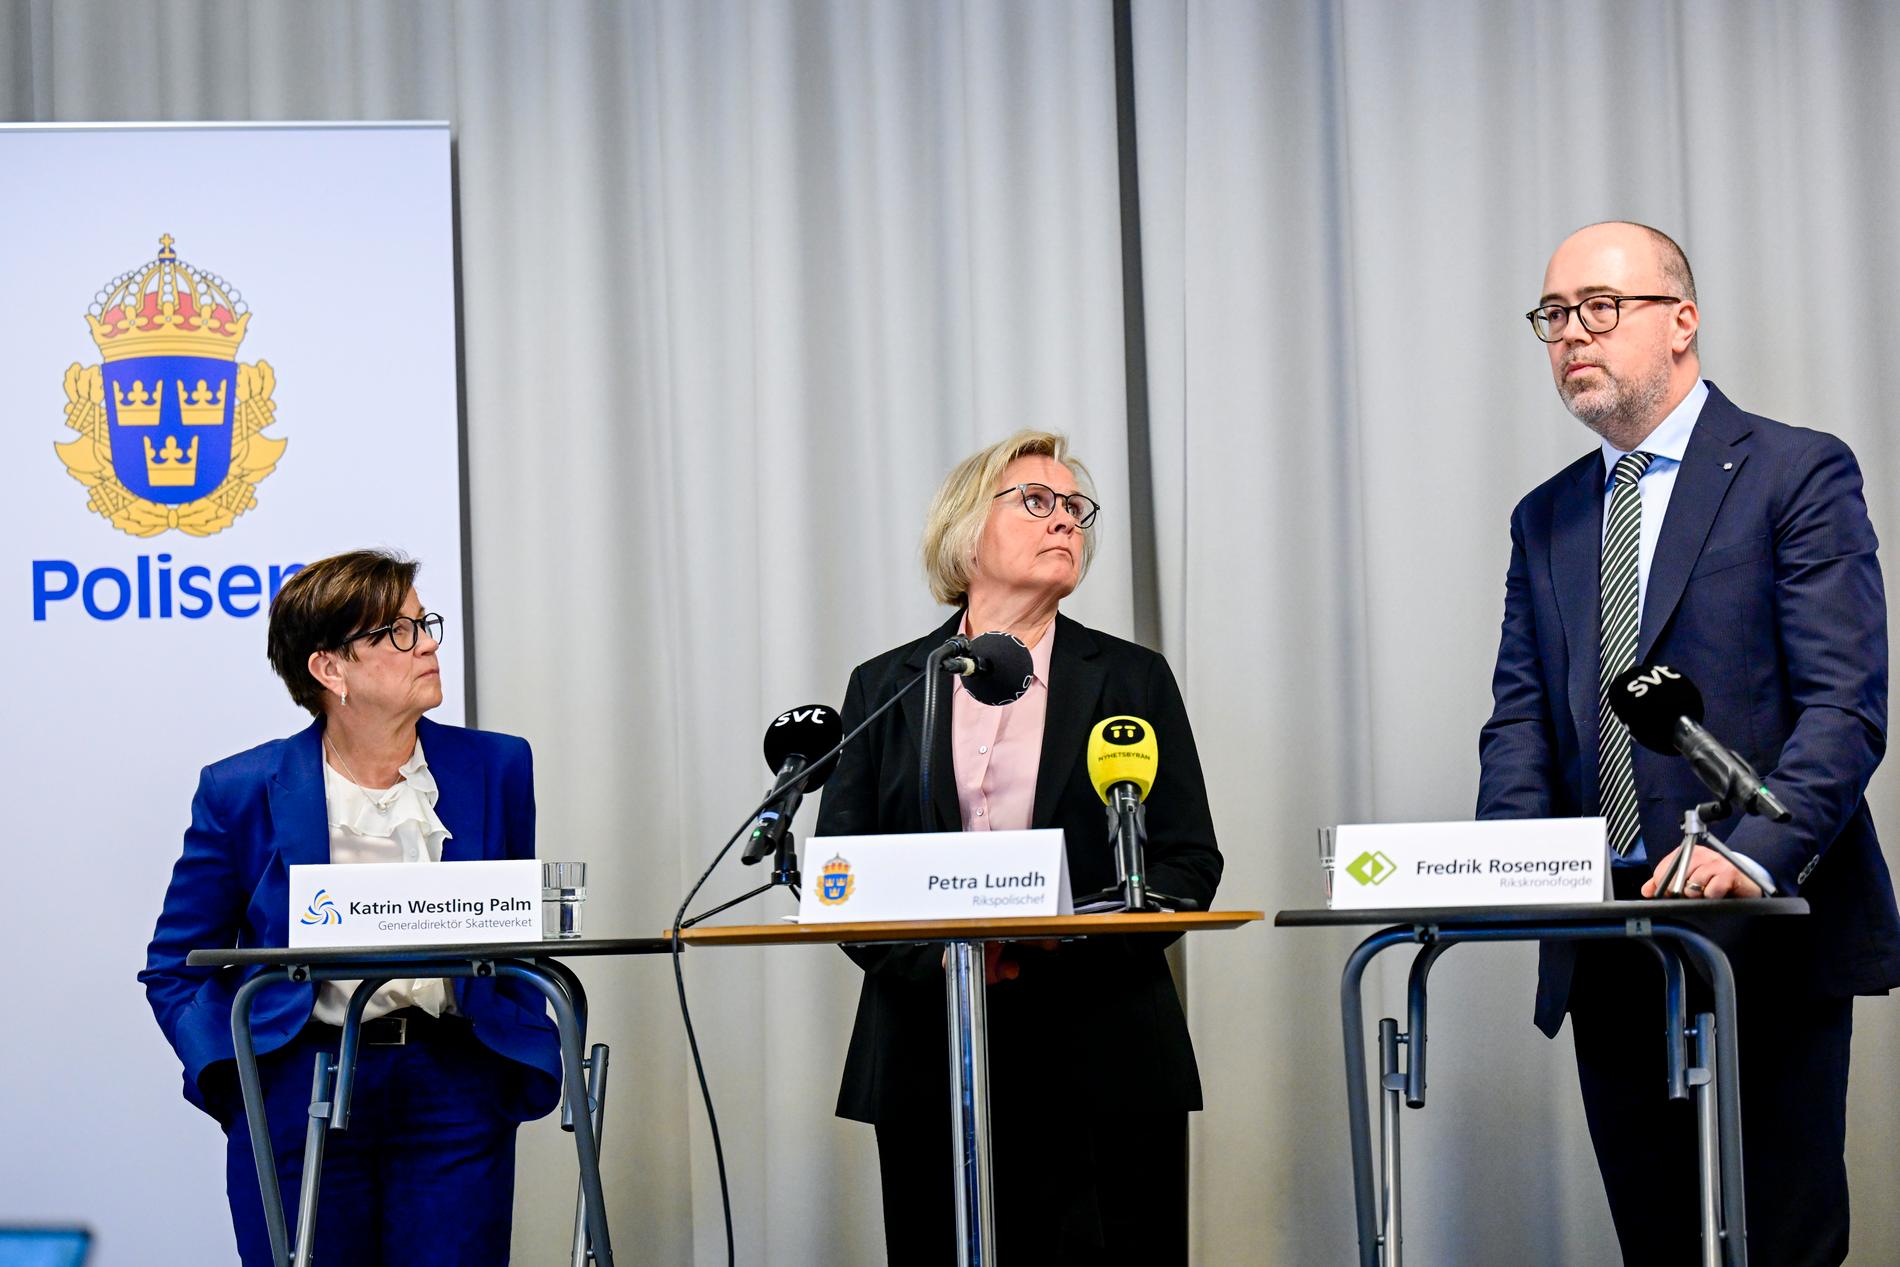 Skatteverkets generaldirektör Katrin Westling Palm, rikspolischef Petra Lundh och rikskronofogde Fredrik Rosengren under tisdagens pressträff.